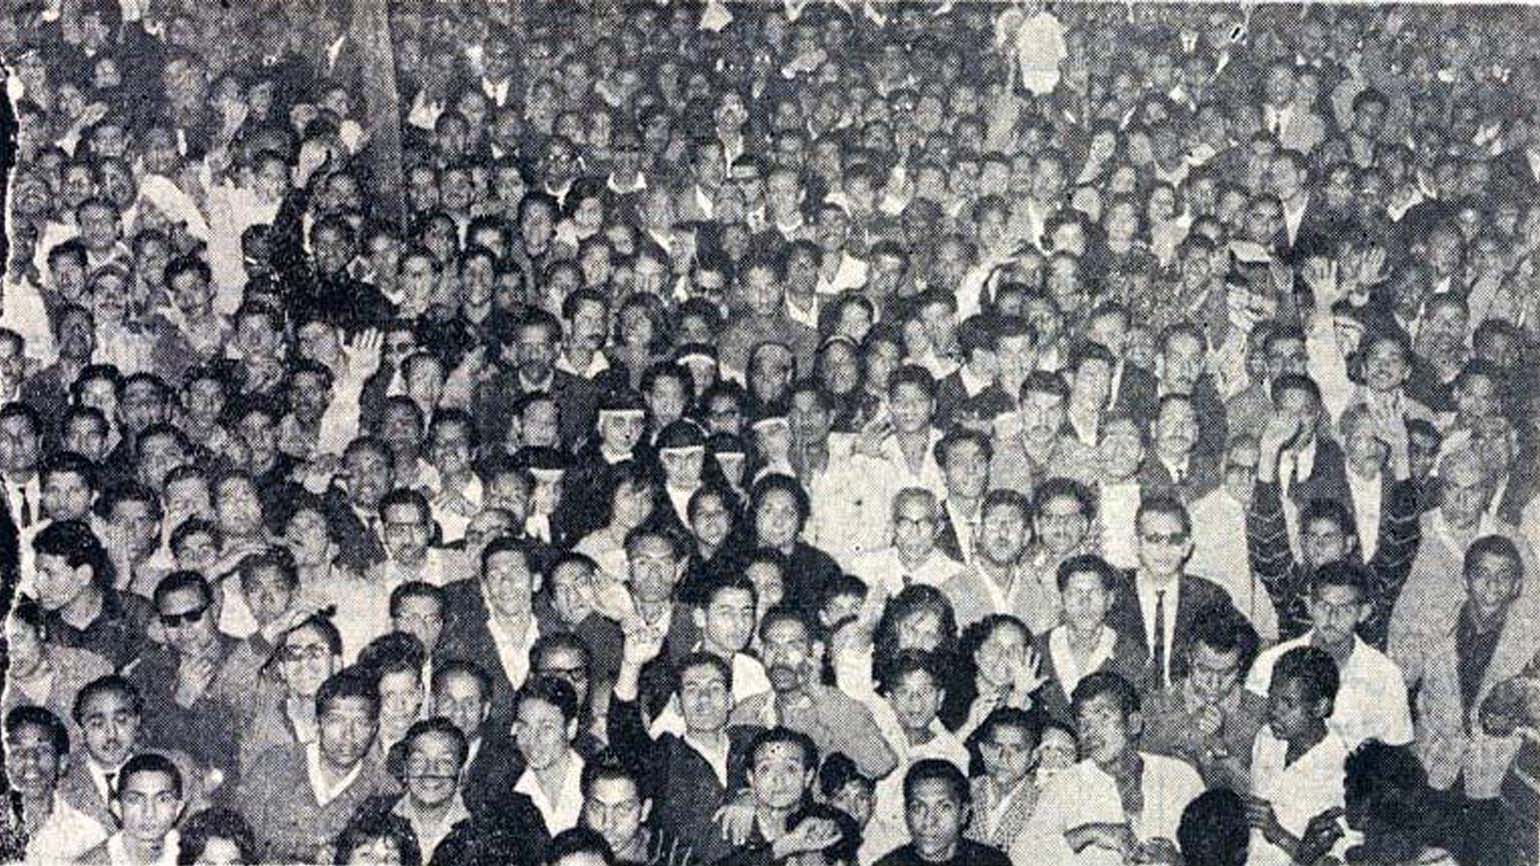 Historic photo of a crowd at Zeitoun, Egypt.